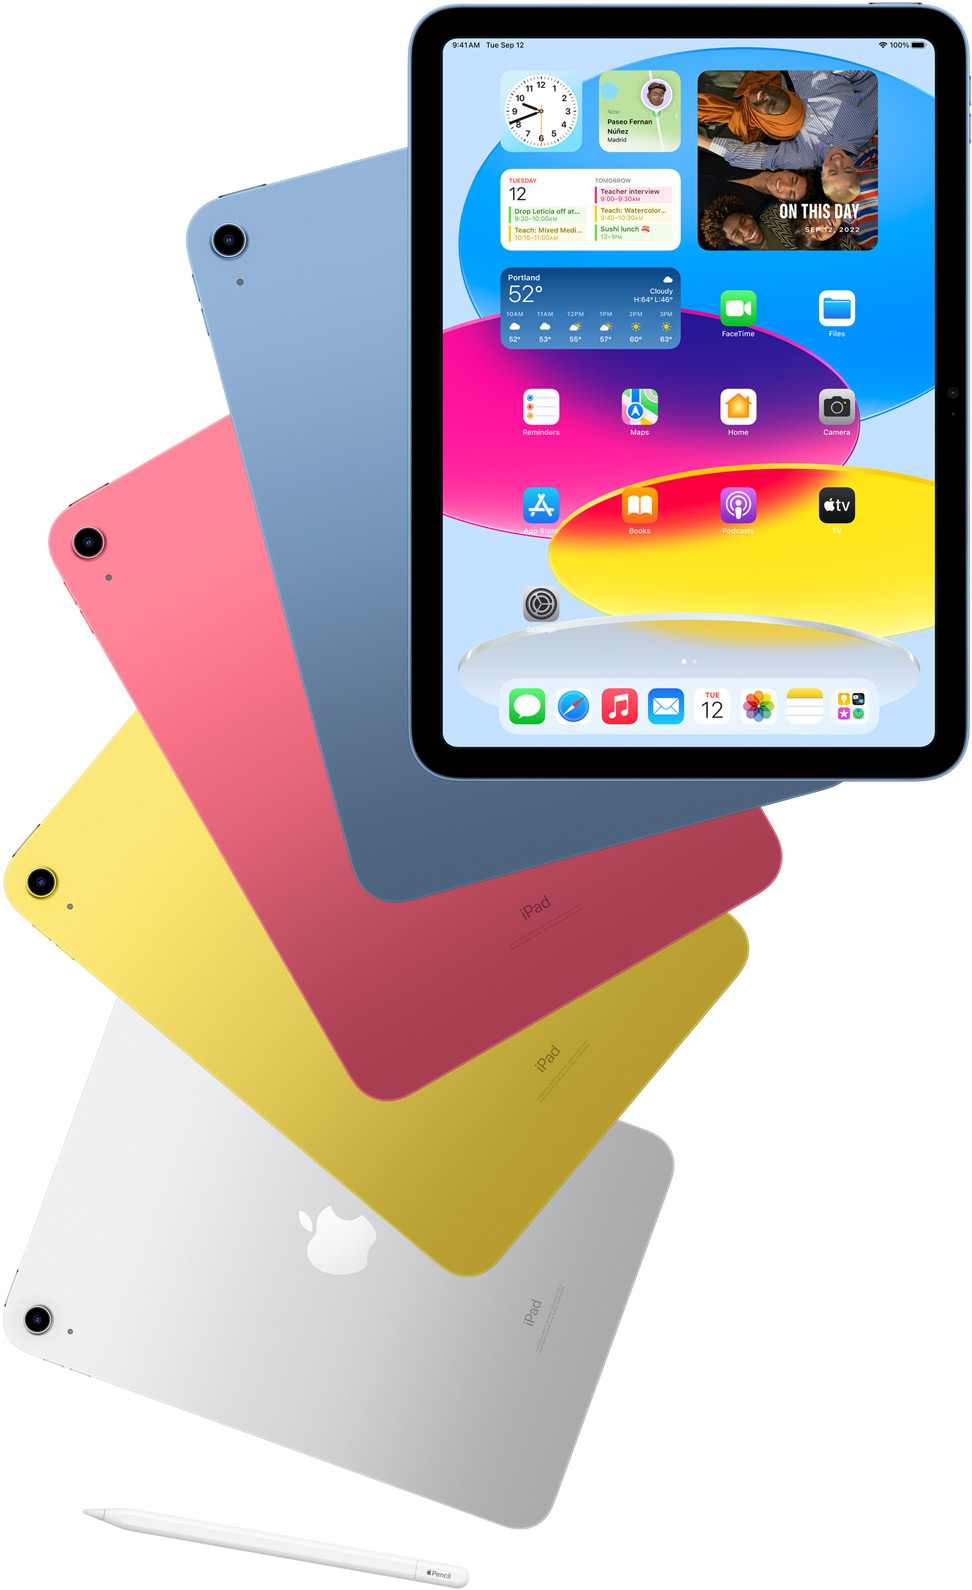 Vooraanzicht van een iPad met beginscherm, met daarachter een aantal iPads met een blauwe, roze, gele en zilverkleurige achterkant. Bij deze iPads is een Apple Pencil te zien.